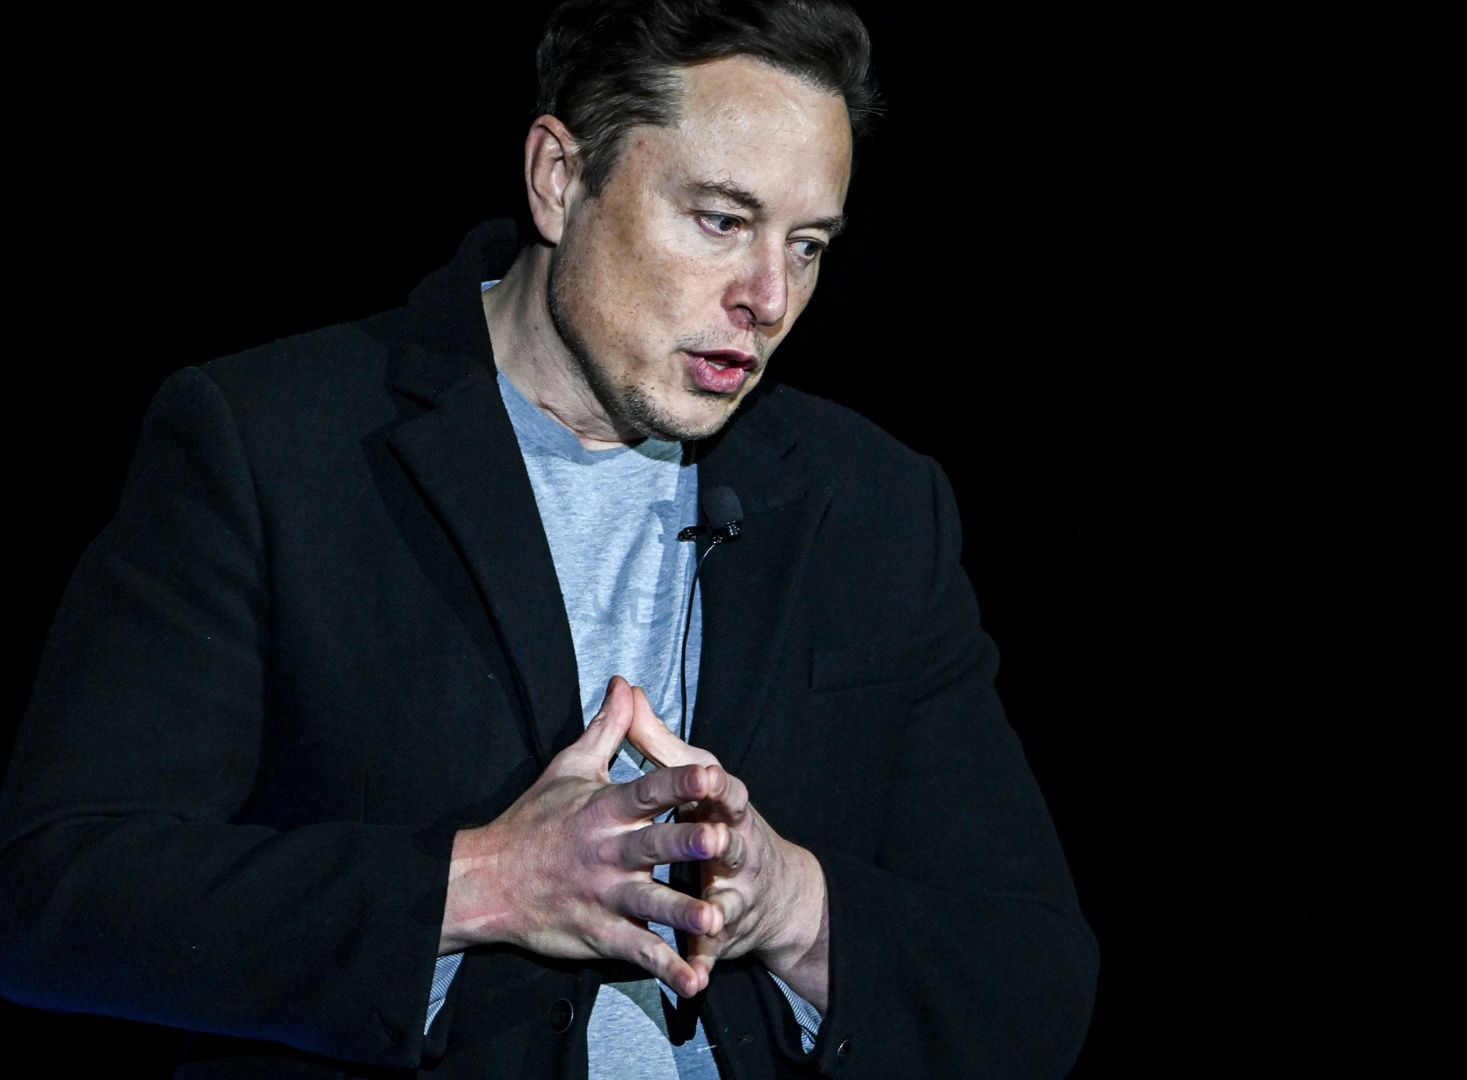 Elon Musk ostro o pracy zdalnej. "To bzdura"